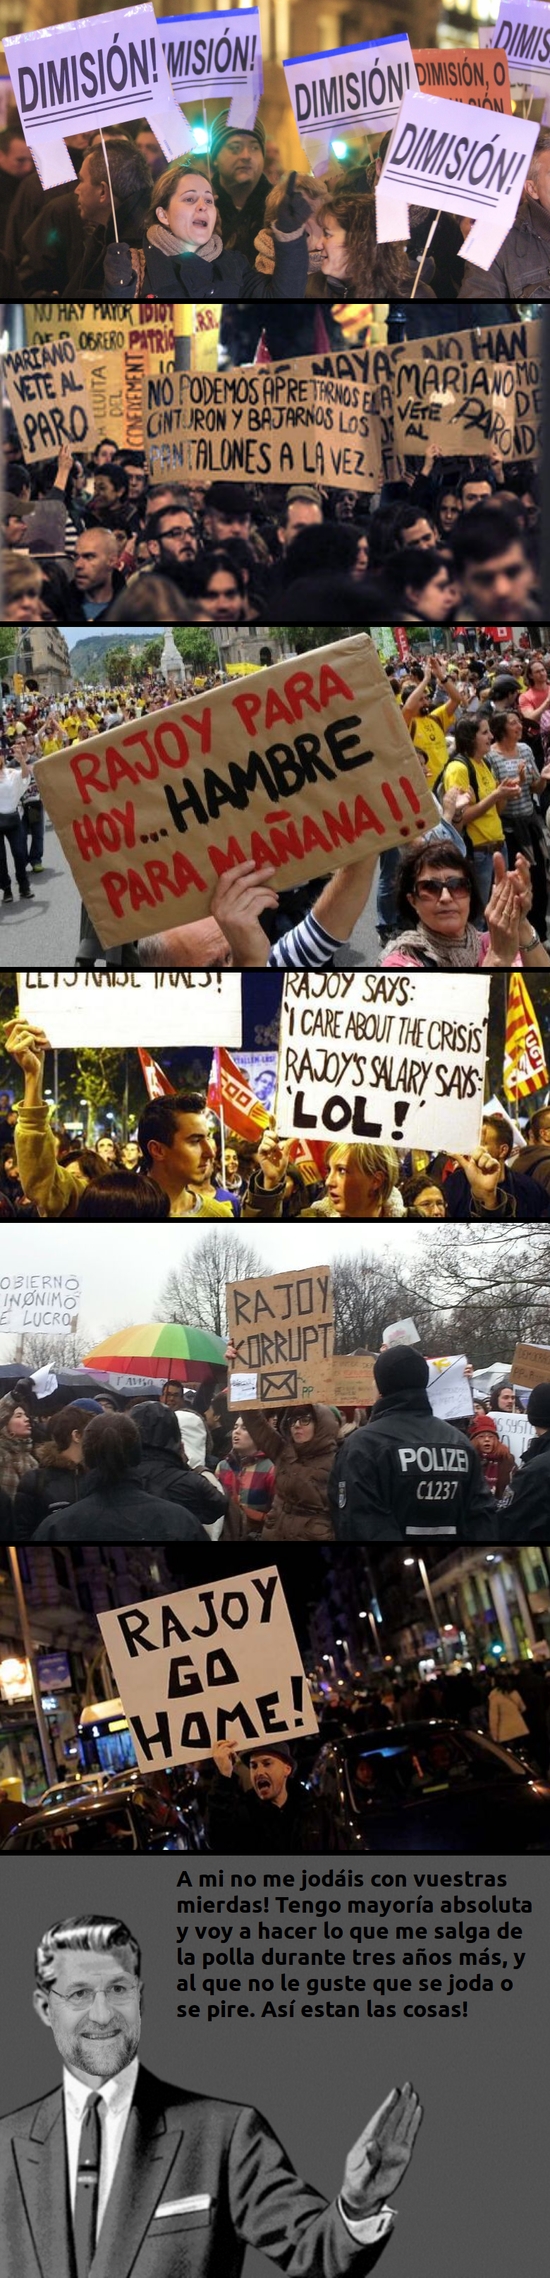 A mi no me jodas,pancartas,Rajoy,revolución